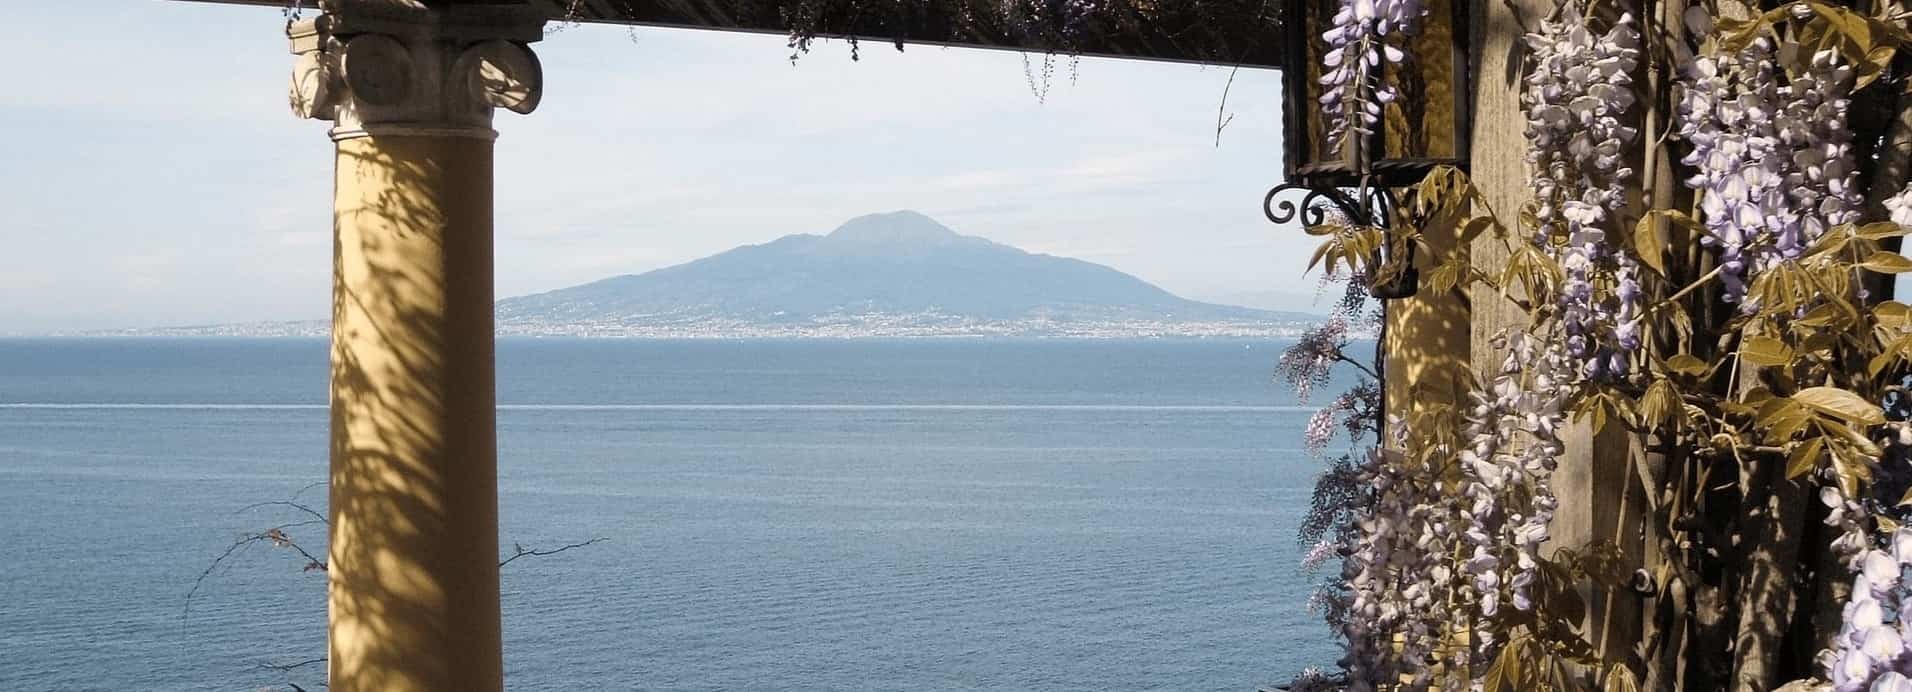 Neapel – Sehenswürdigkeiten und Tipps für das süditalienische Juwel